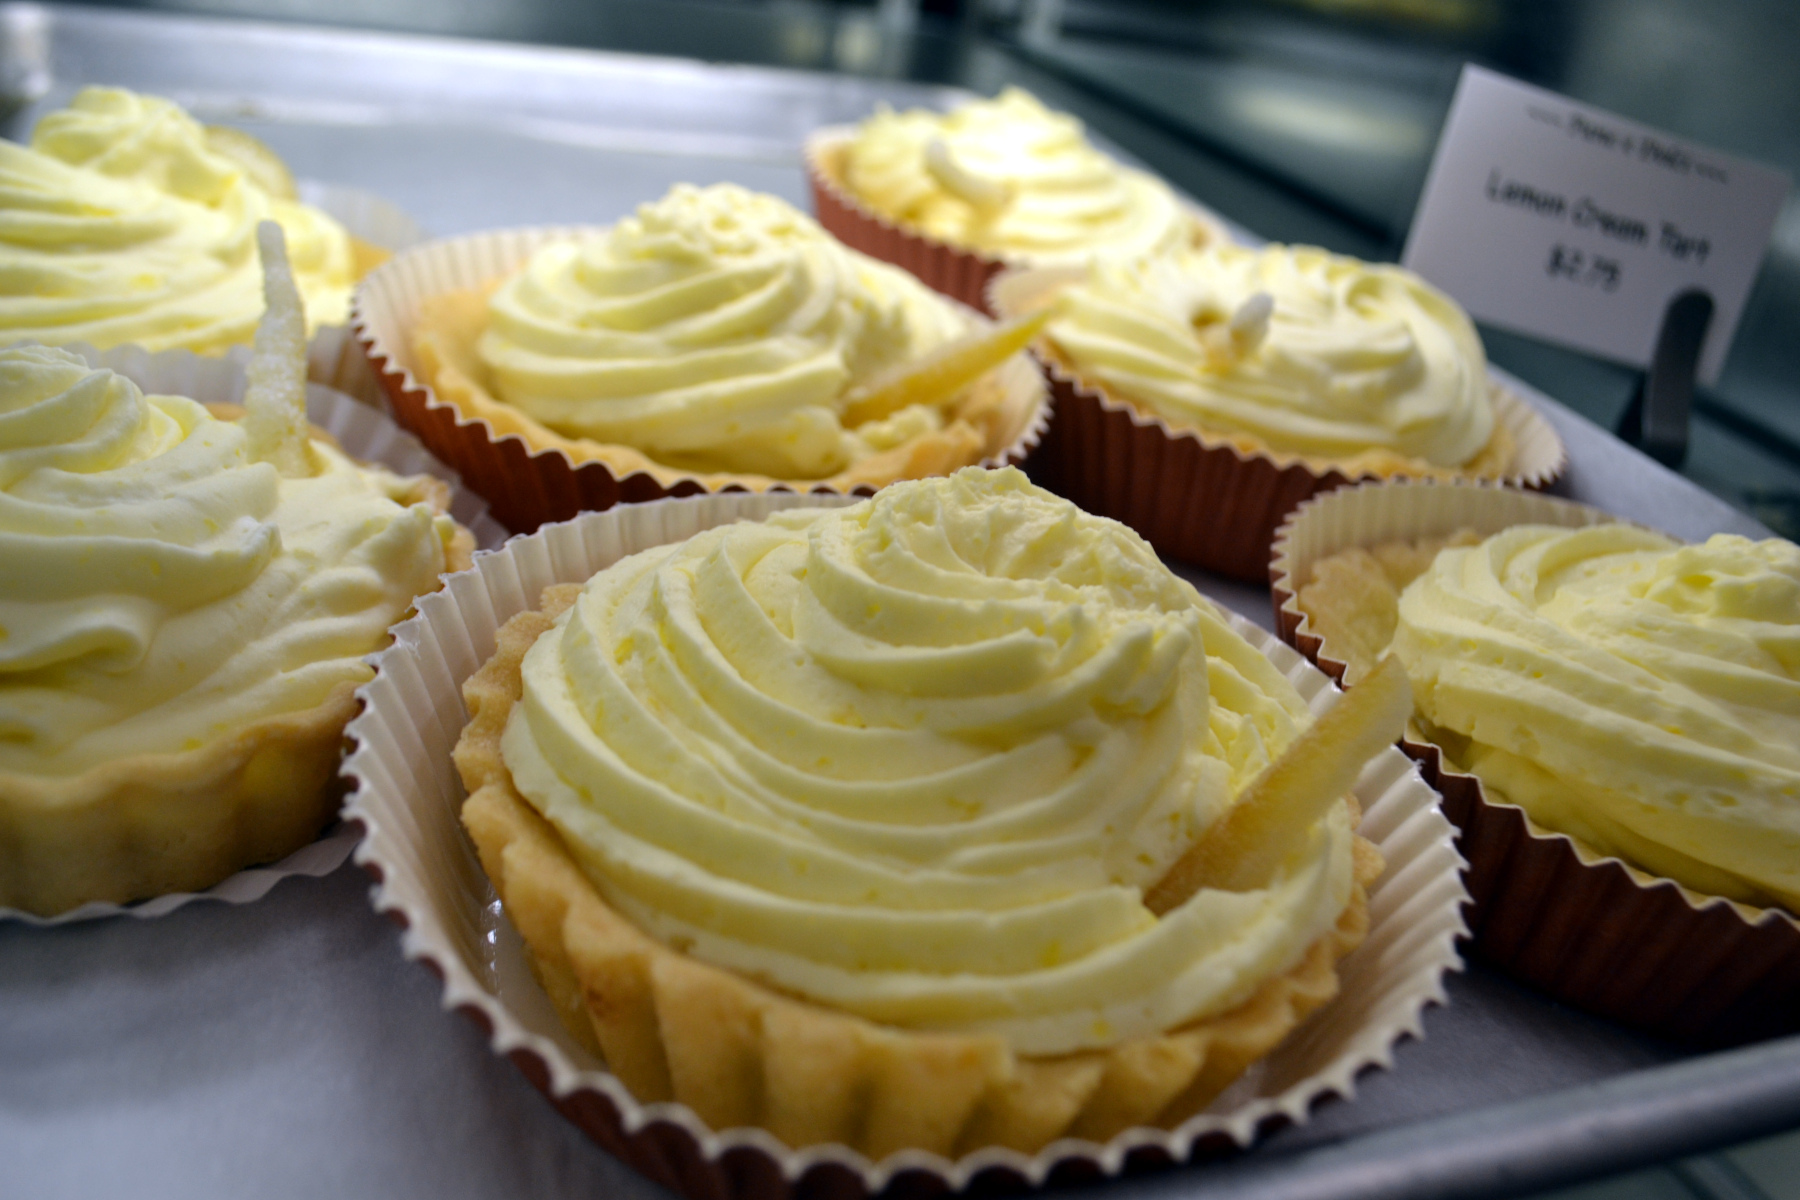 Close up photo of lemon tarts in bakery case